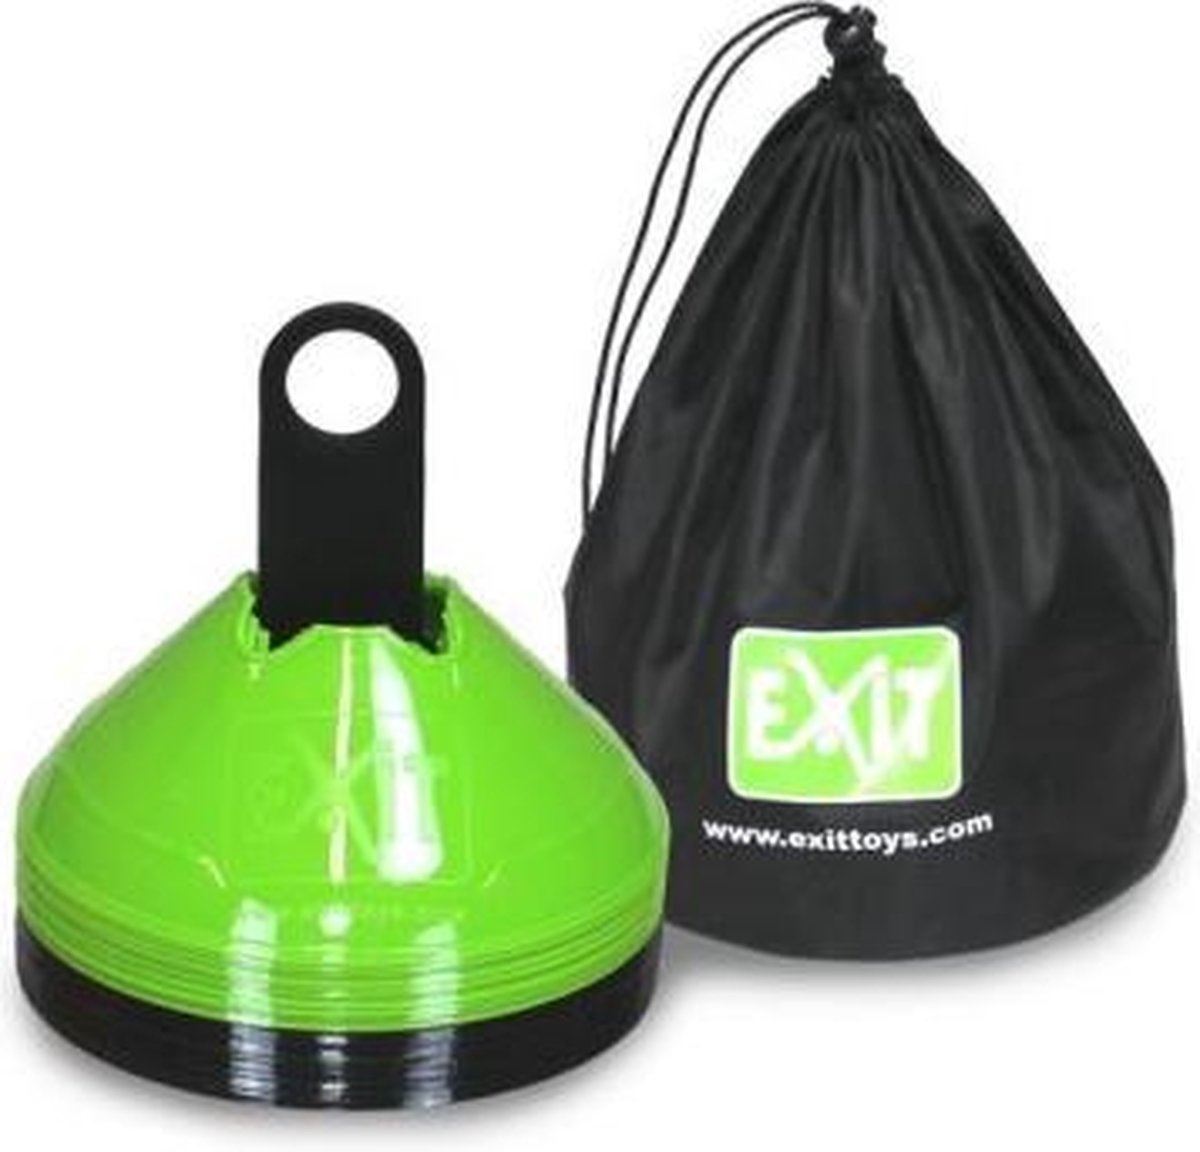 EXIT markeringspionnen (20 stuks) - groen/zwart